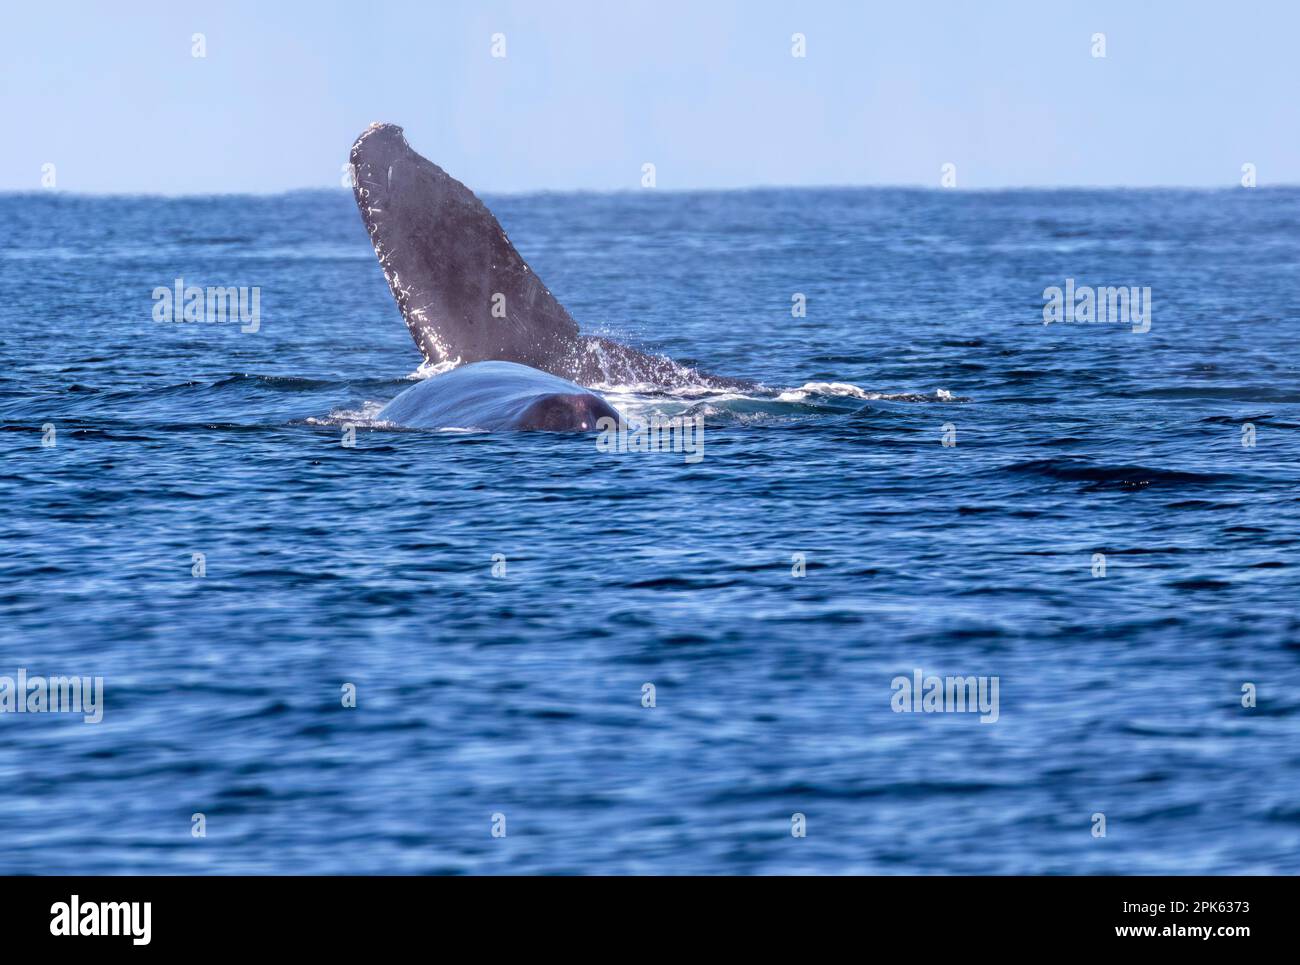 La cola fluke y el área dorsal de una ballena jorobada mientras rompe la superficie en el Océano Pacífico frente a la costa de México. Foto de stock